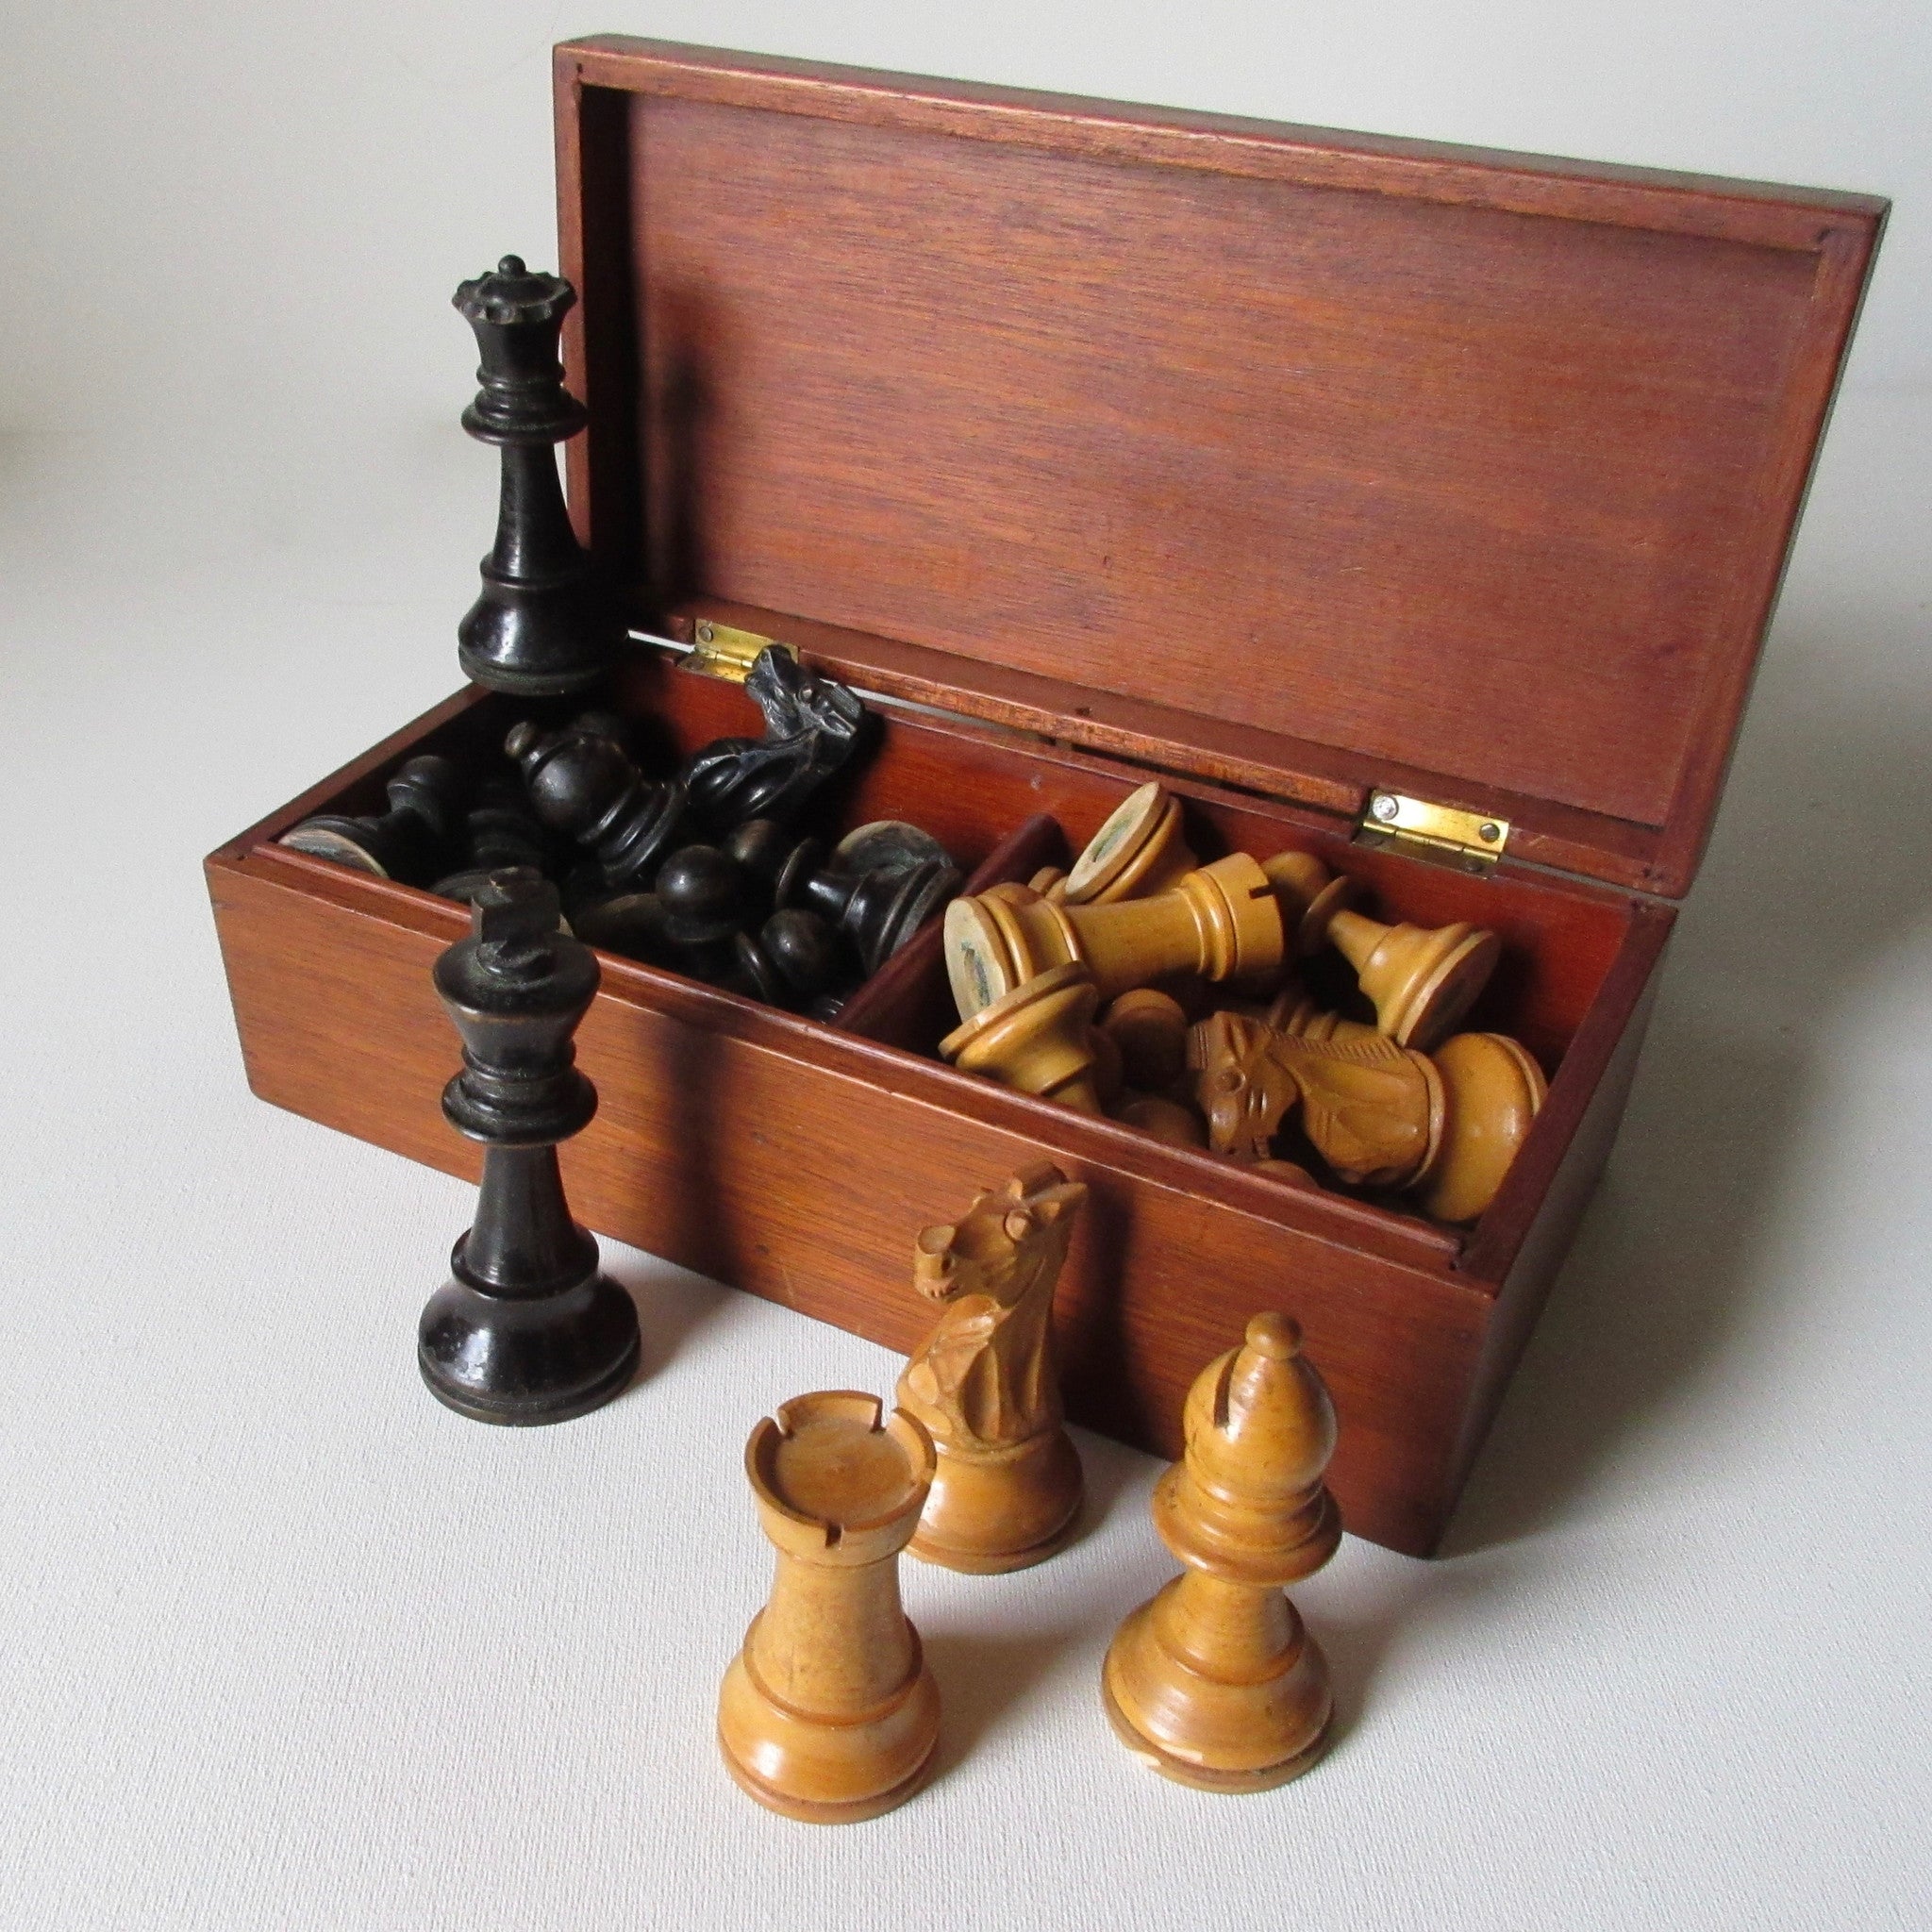 Antique Weighted "Staunton" Wooden Chess Set